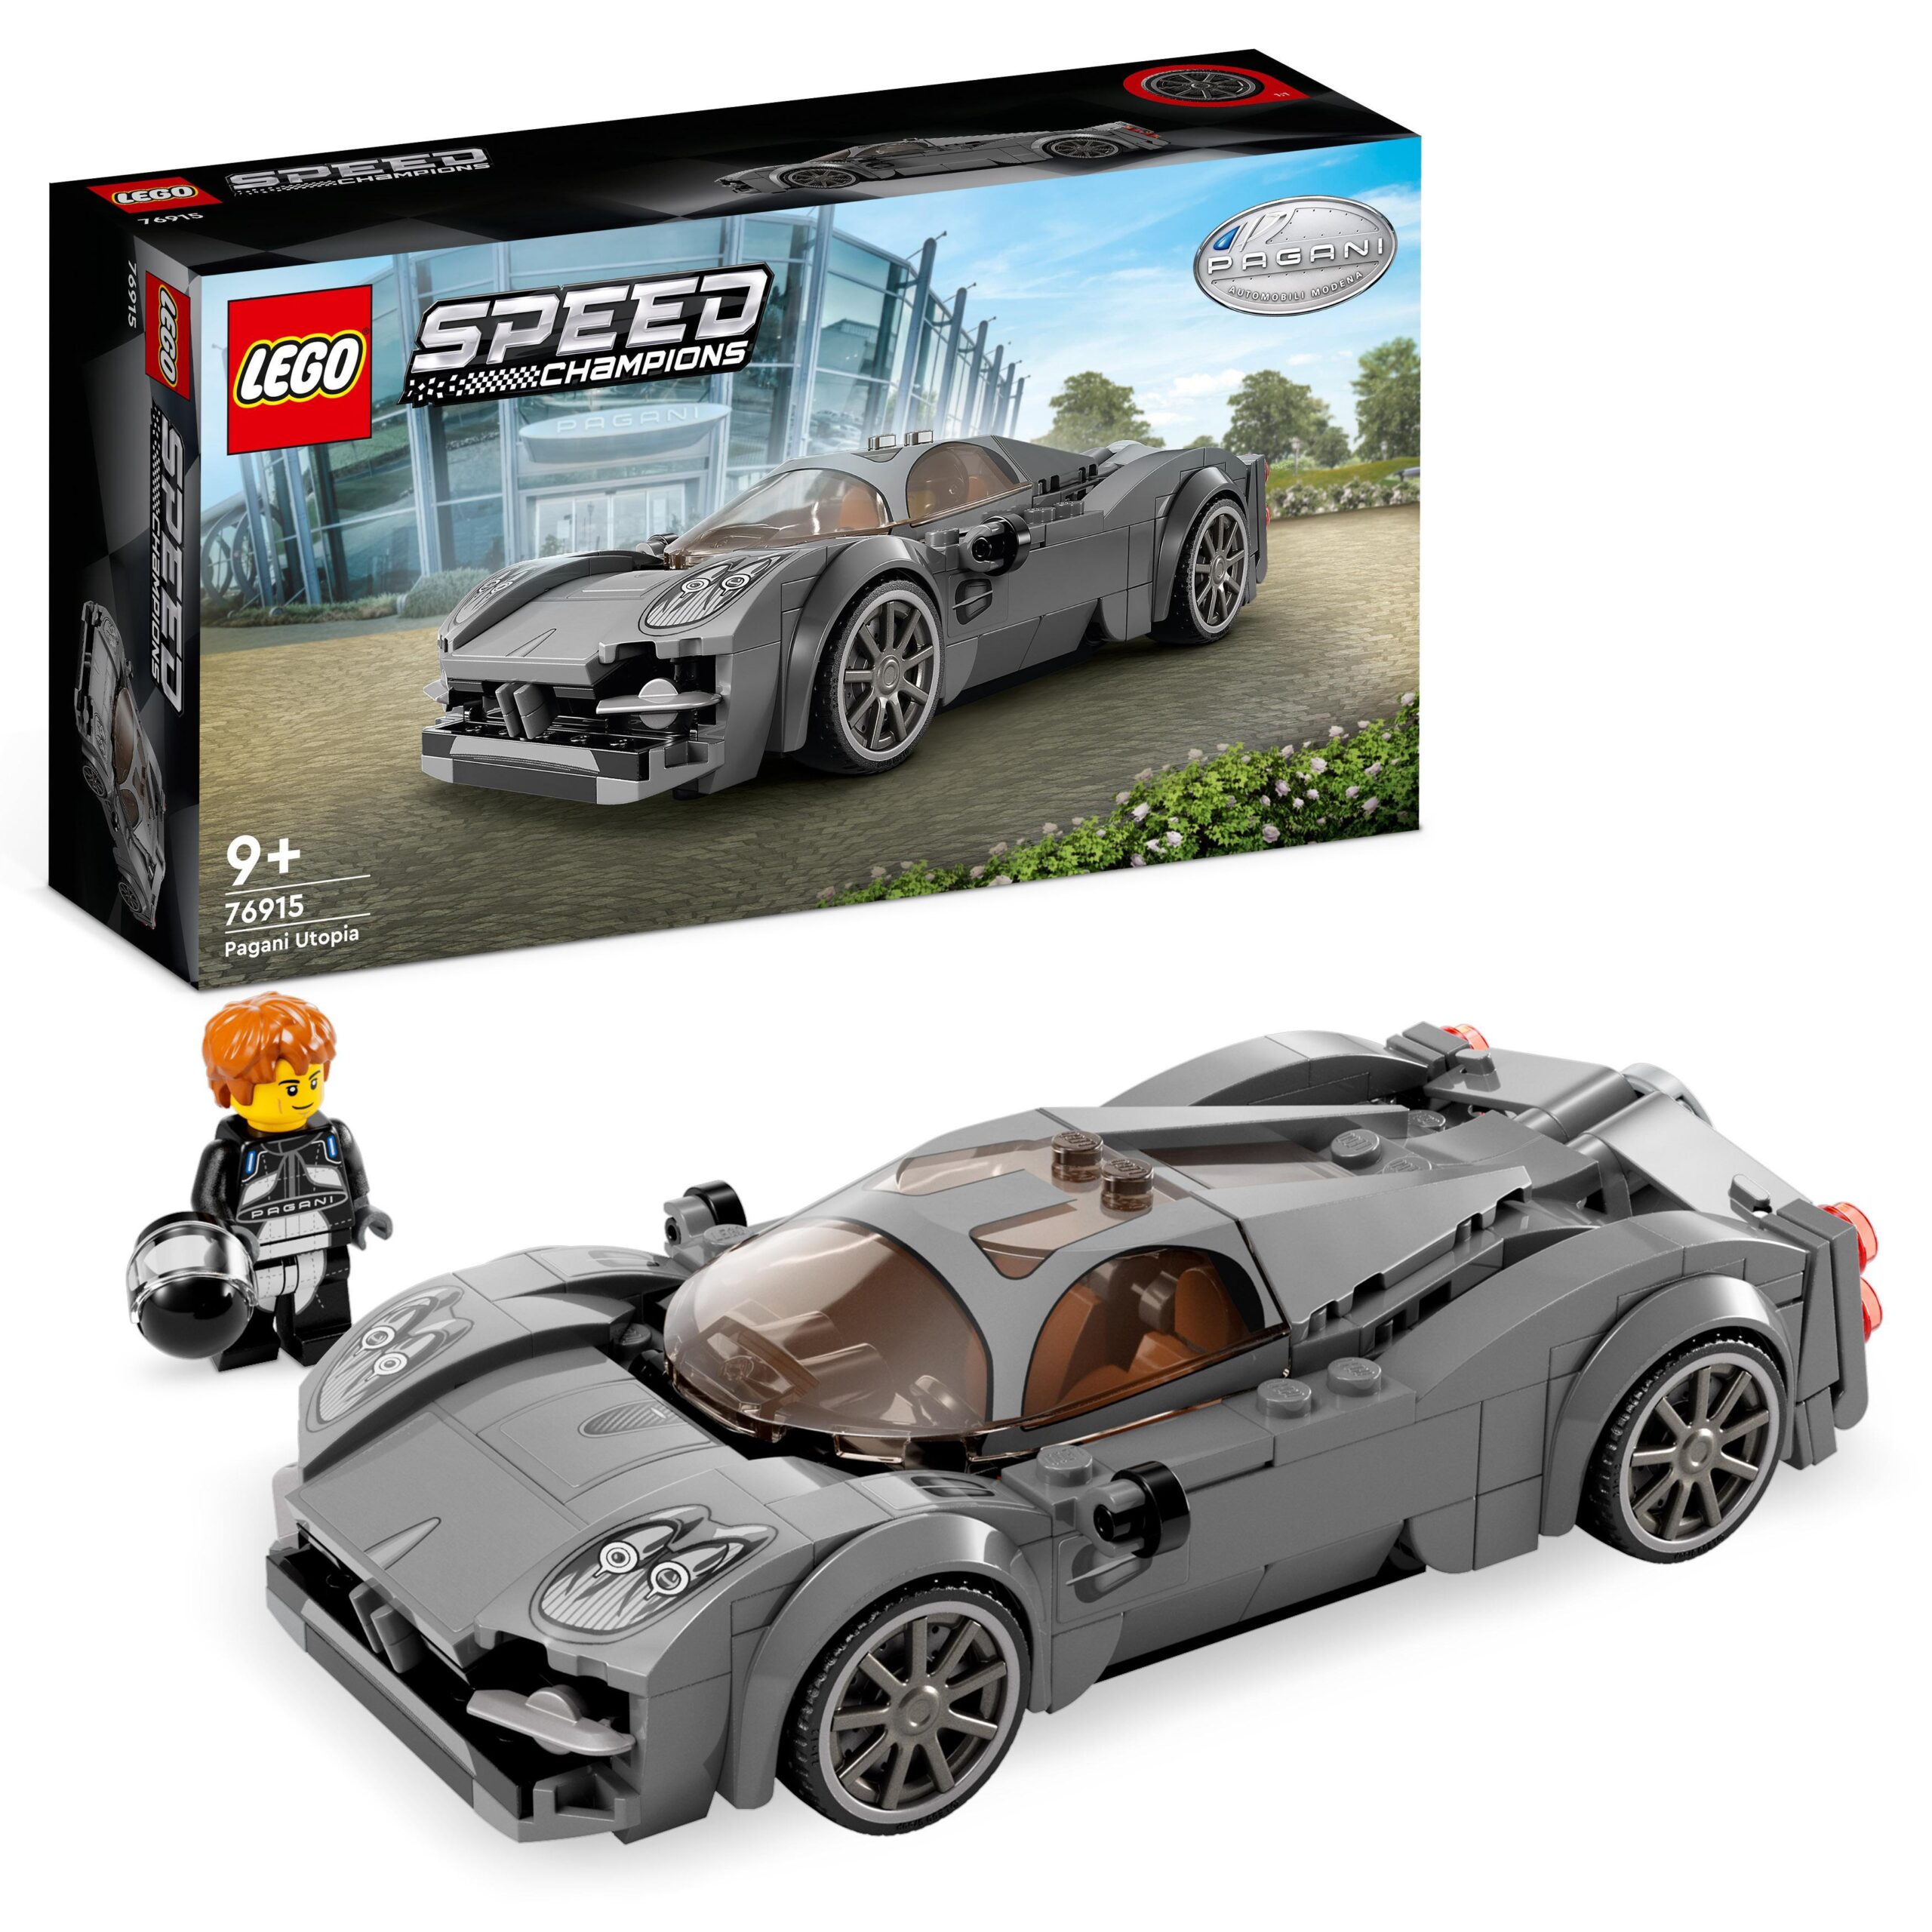 Lego speed champions 76915 pagani utopia, modellino di auto di hypercar  italiana, macchina giocattolo da collezione, set 2023 - Toys Center